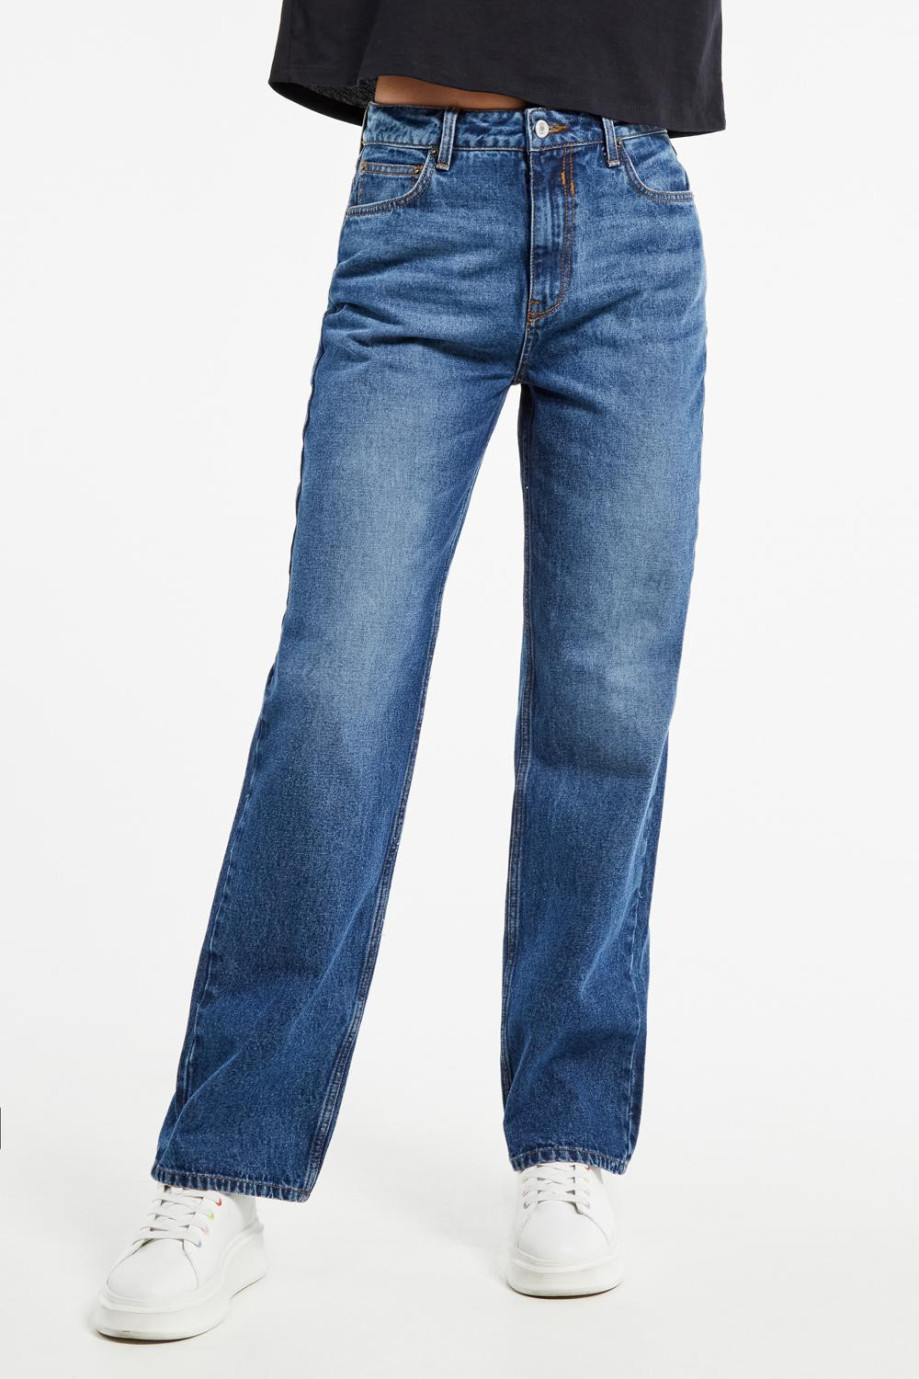 Jean 90´S tiro alto azul oscuro con costuras en contraste y bota recta